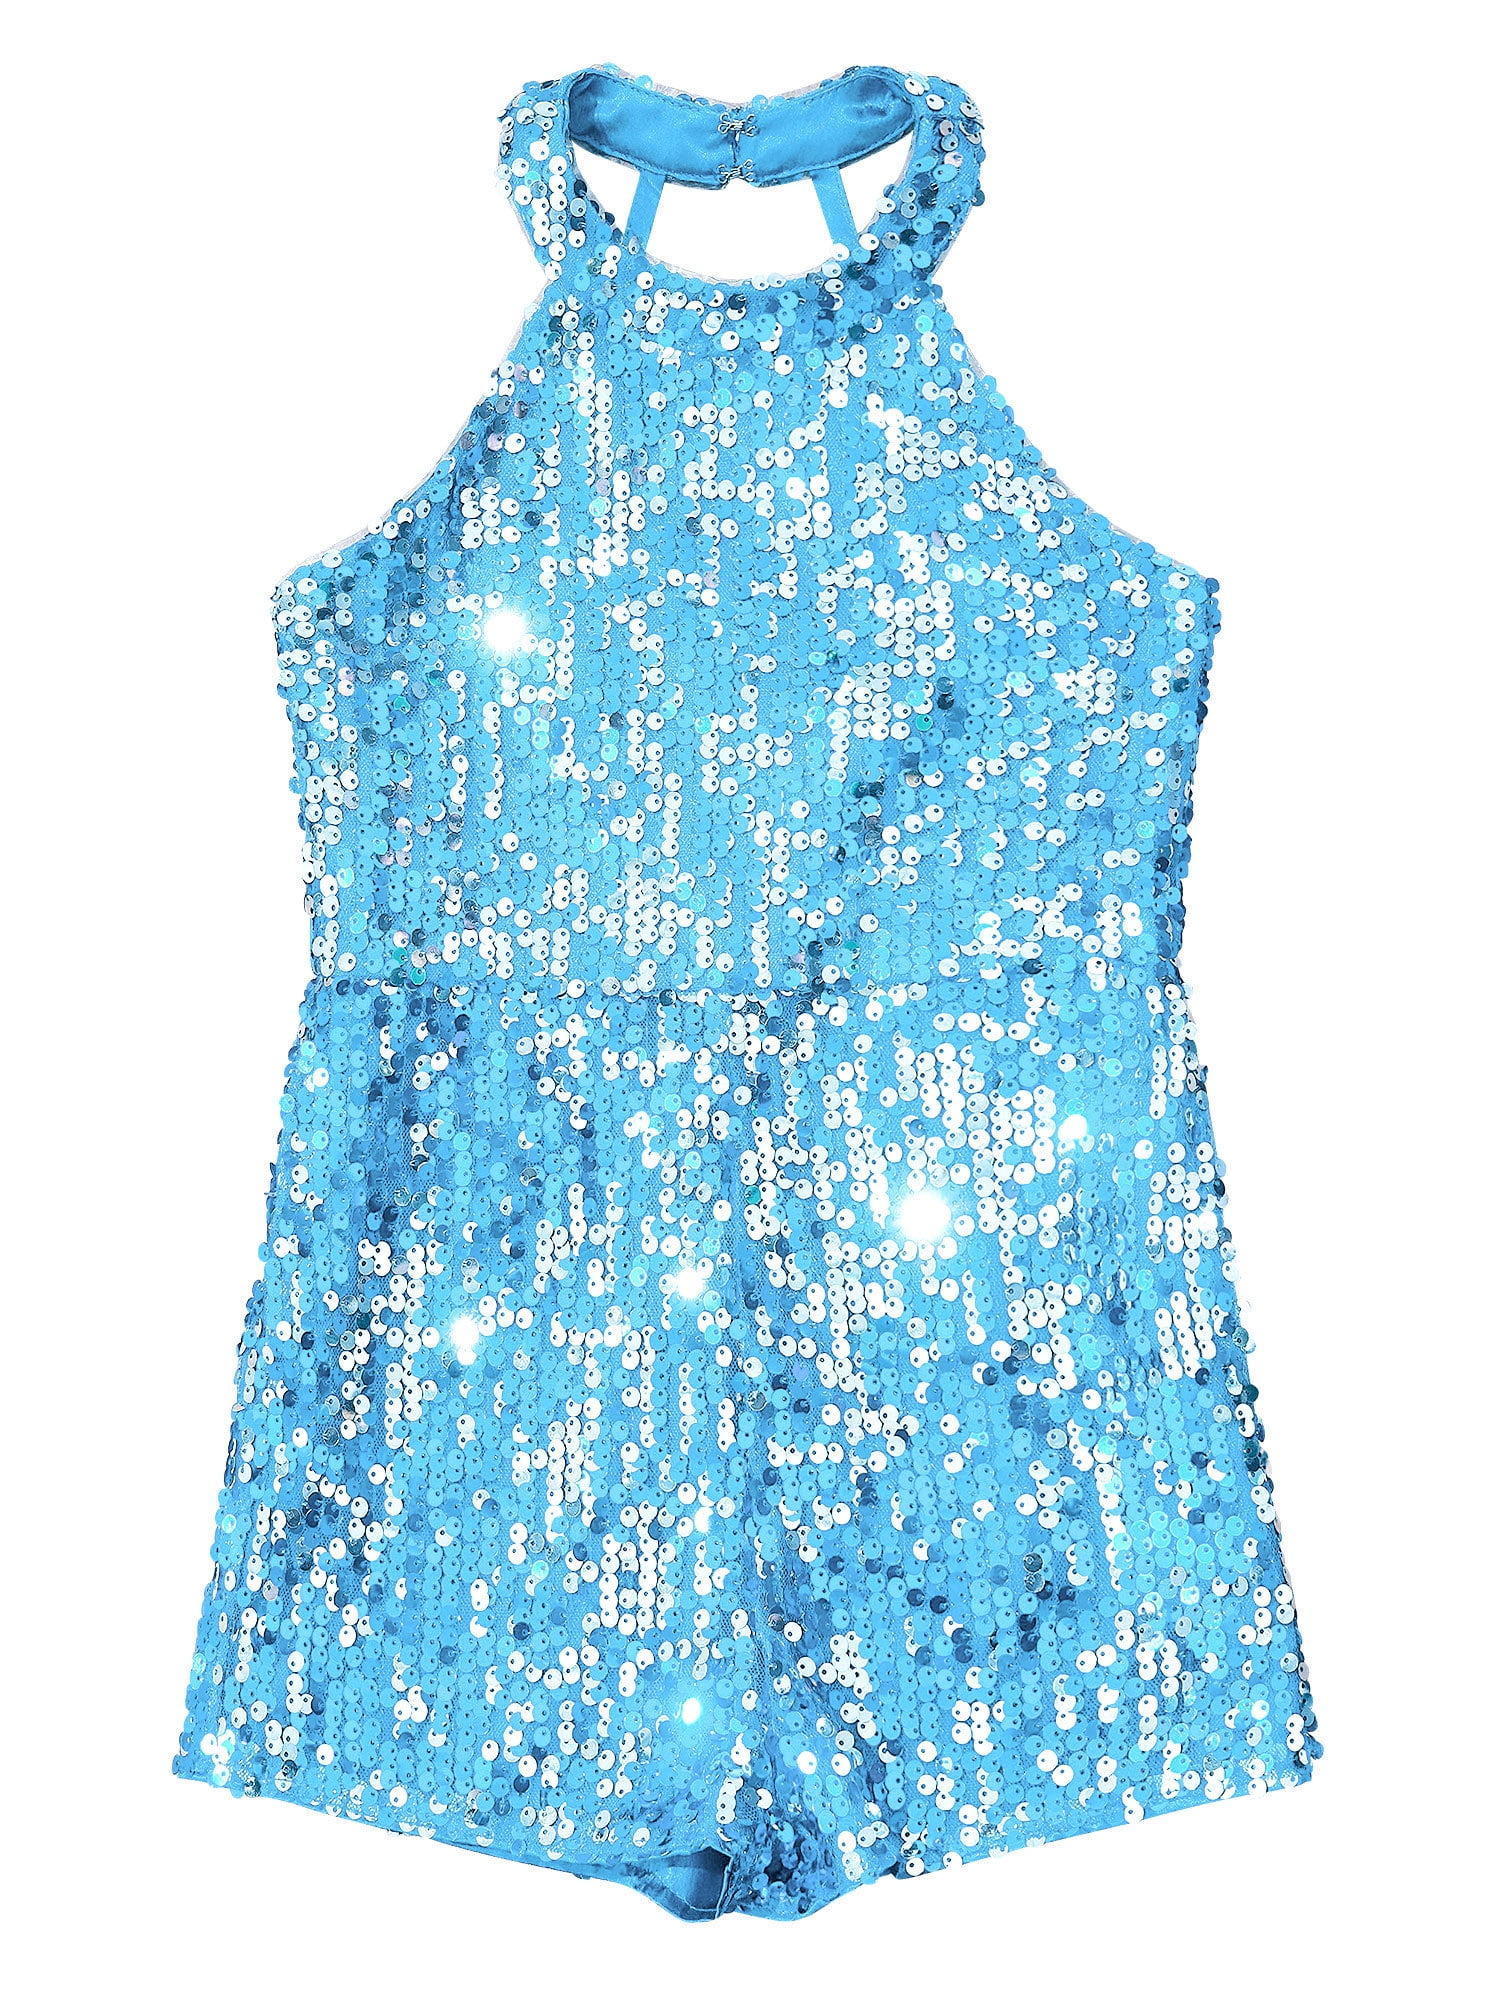 Popilush Cotton Snap Light Blue Jumpsuit Bodysuit Set For Baby